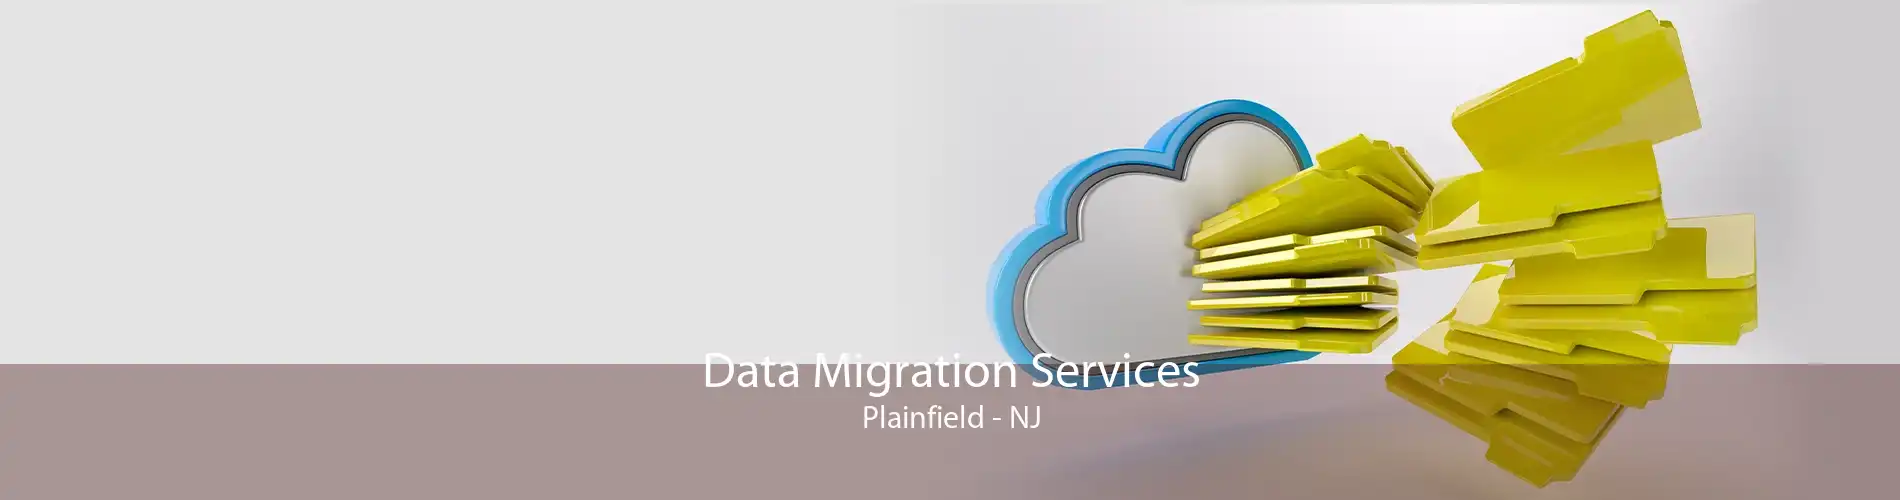 Data Migration Services Plainfield - NJ